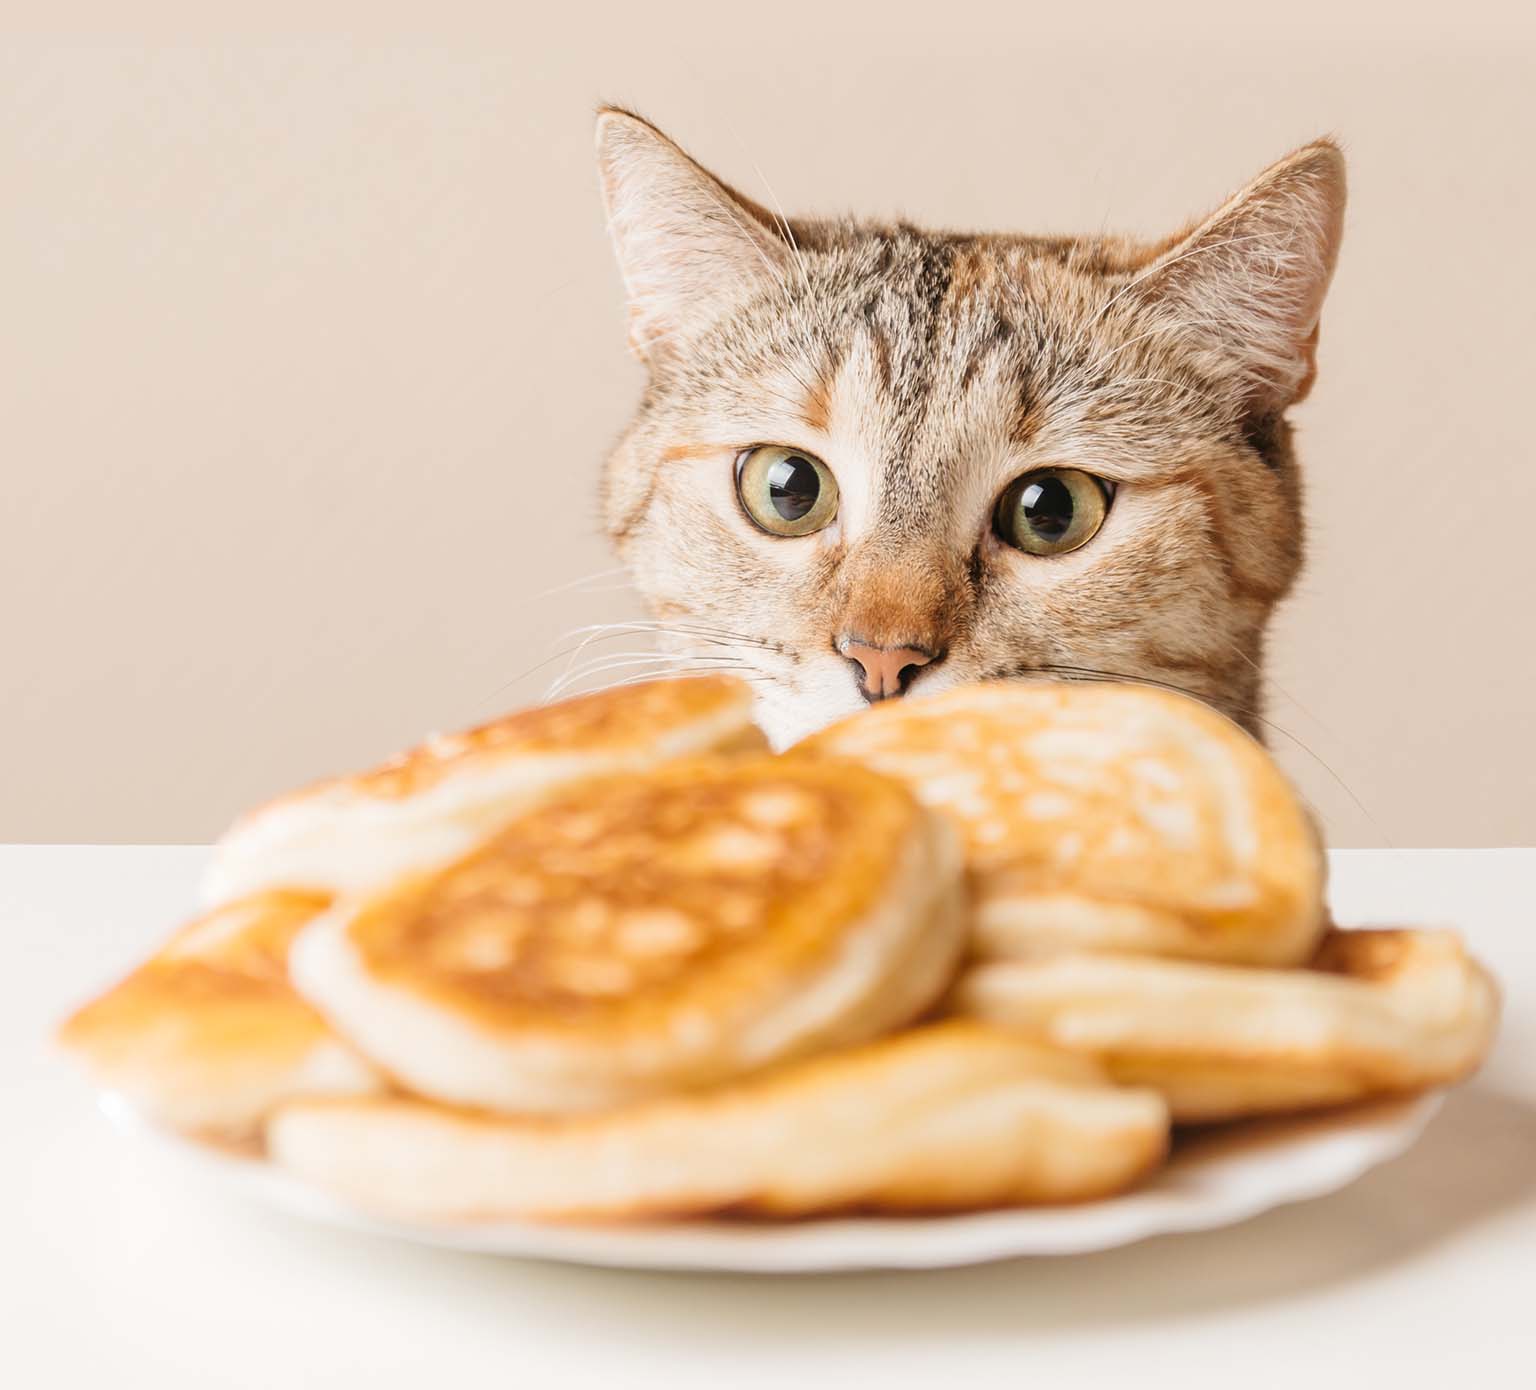 10 Lebensmittel, die nur für den menschlichen Verzehr geeignet sind und die für Katzen gefährlich sind